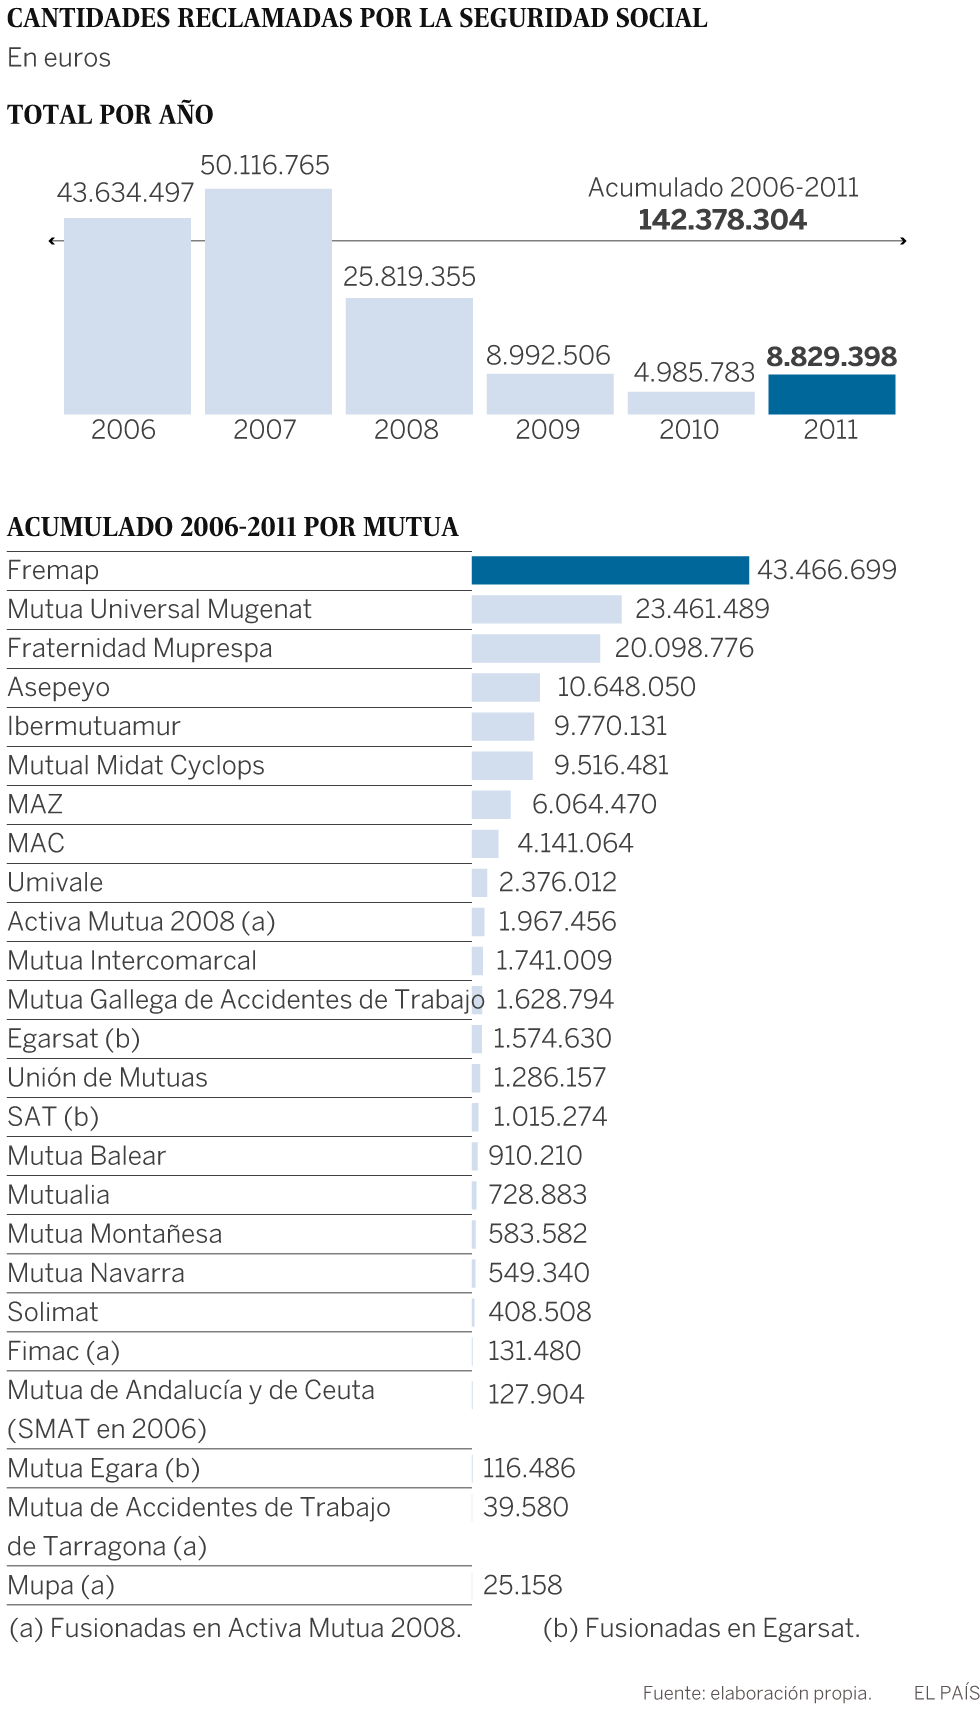 Empleo exigió a las mutuas 142 millones por gastos irregulares de 2006 a 2011